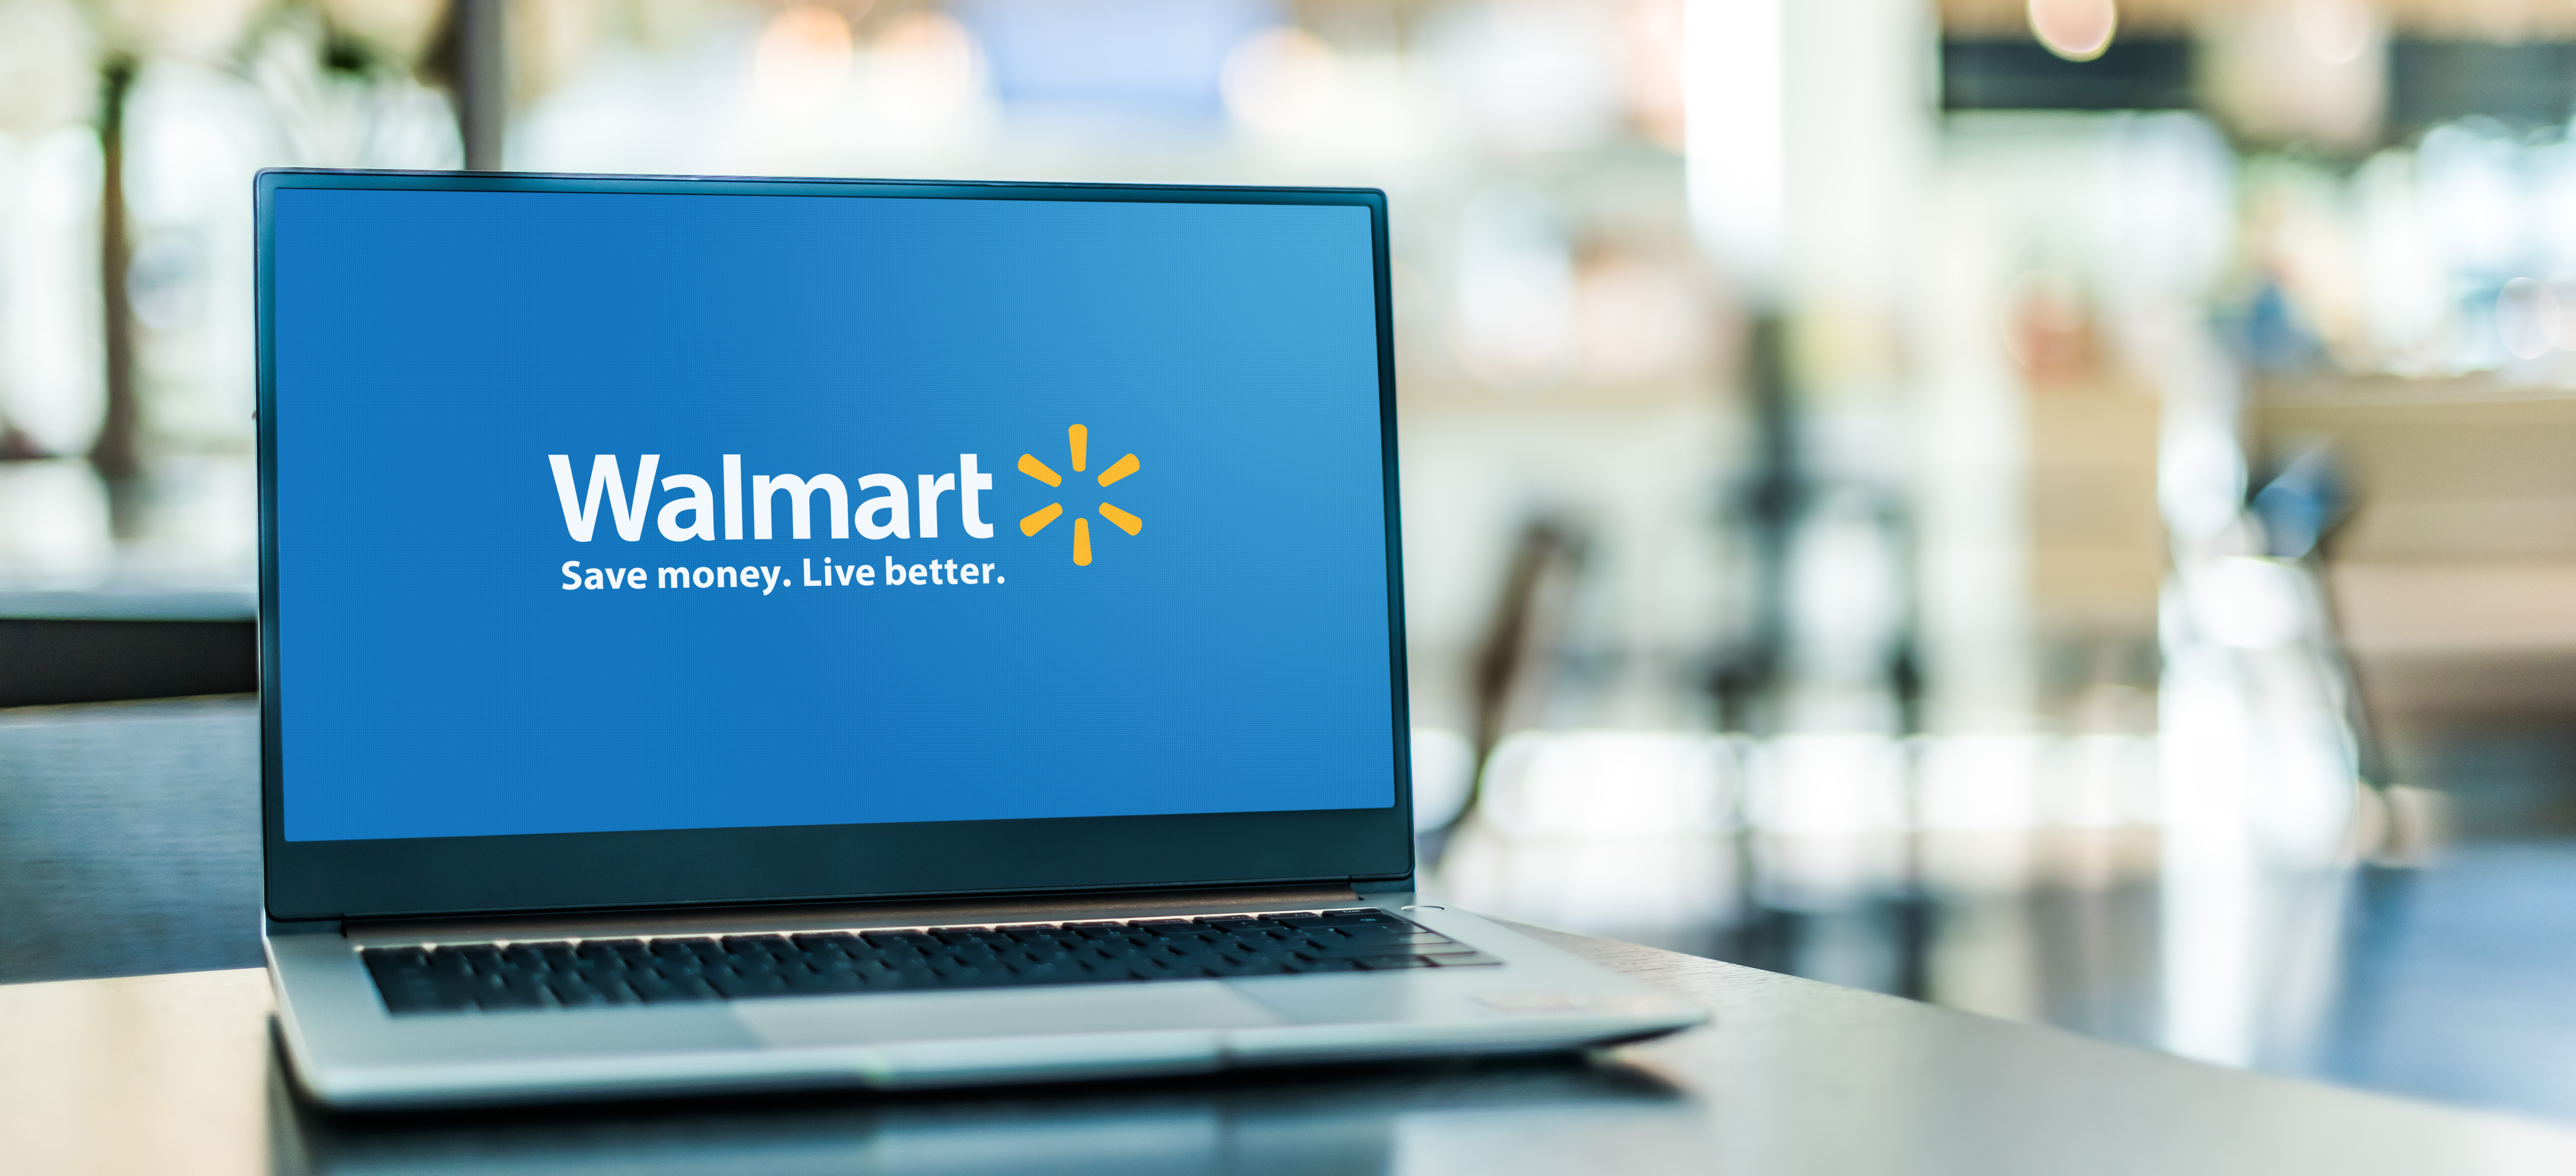 Laptop with Walmart logo